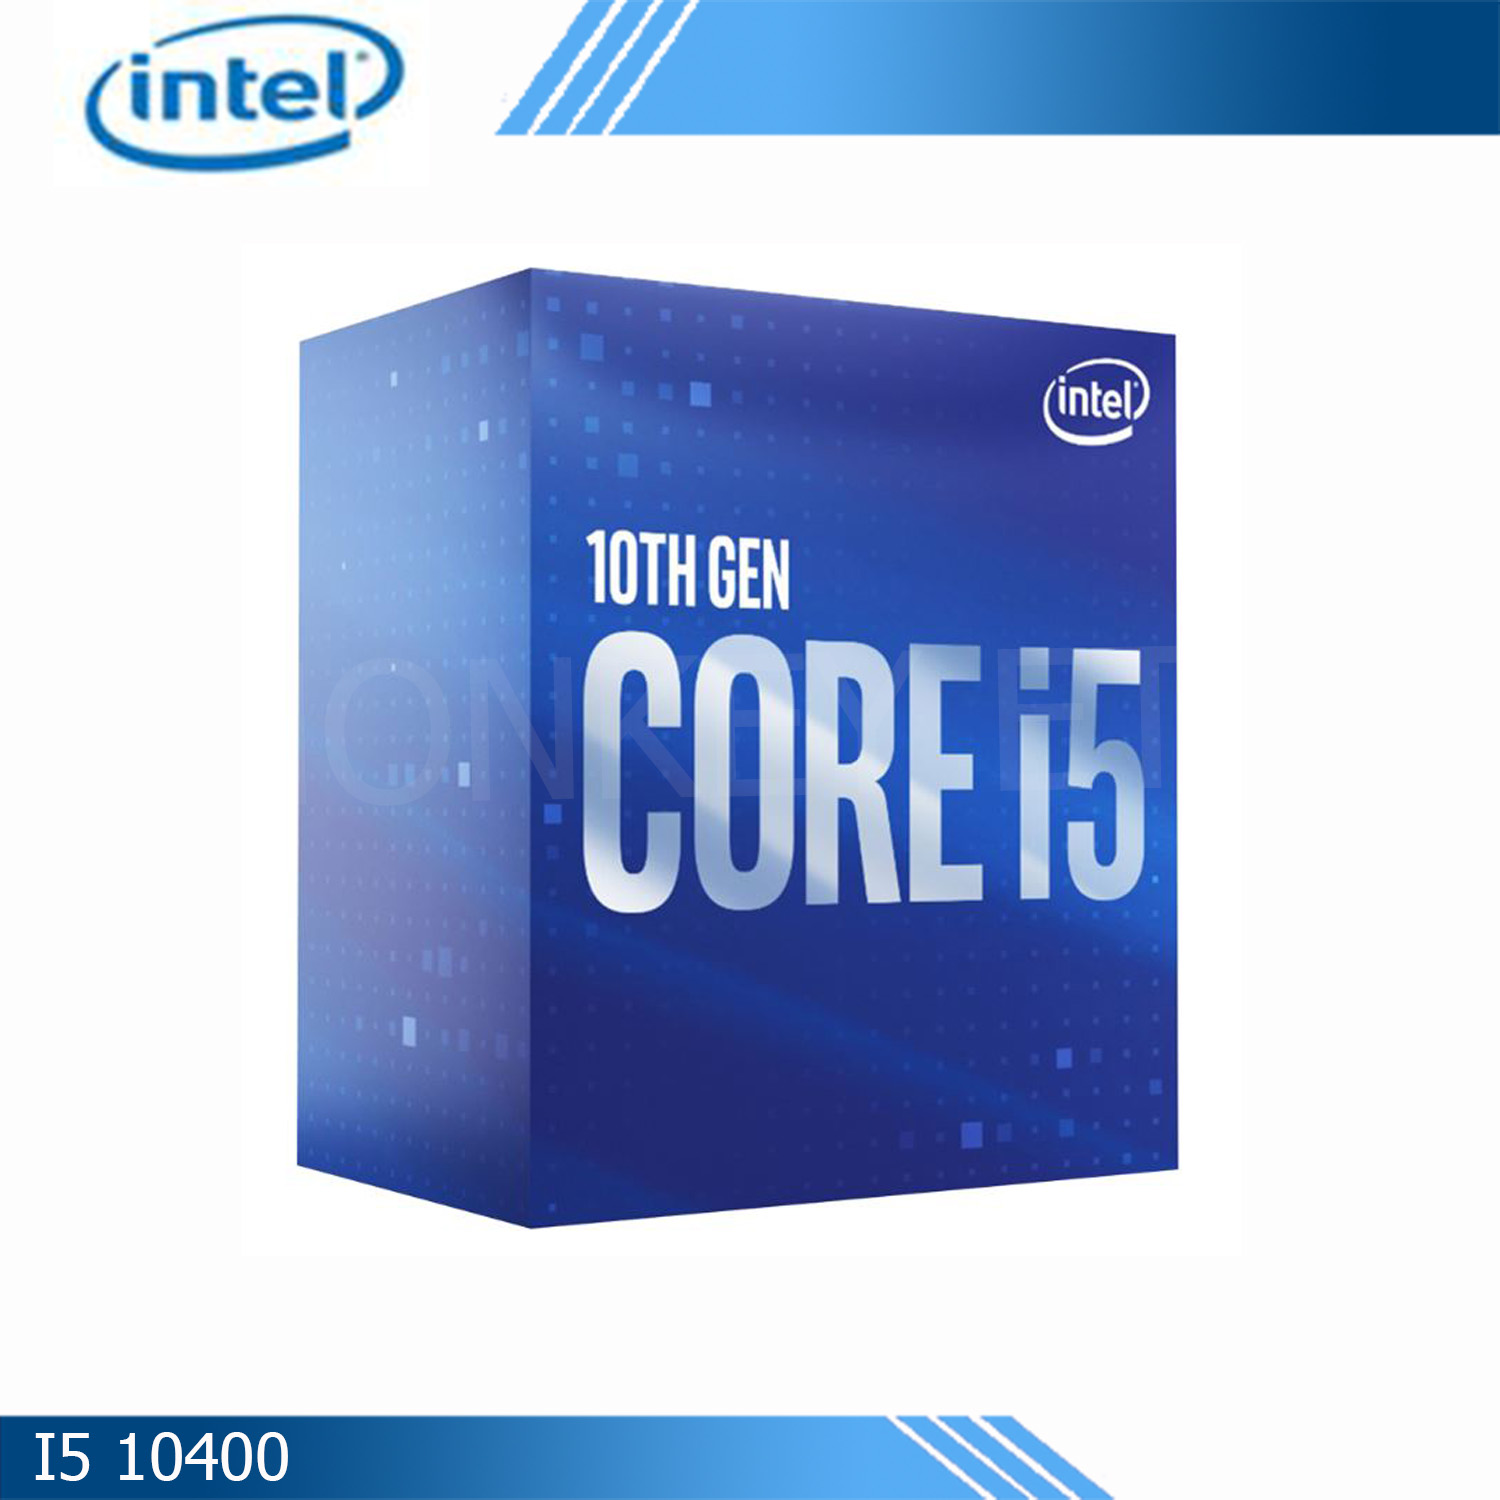 INTEL CPU CORE i5 10400 2.90GHz 9MB  6C/12T GEN10 LGA1200 By.Synnex/Ingram